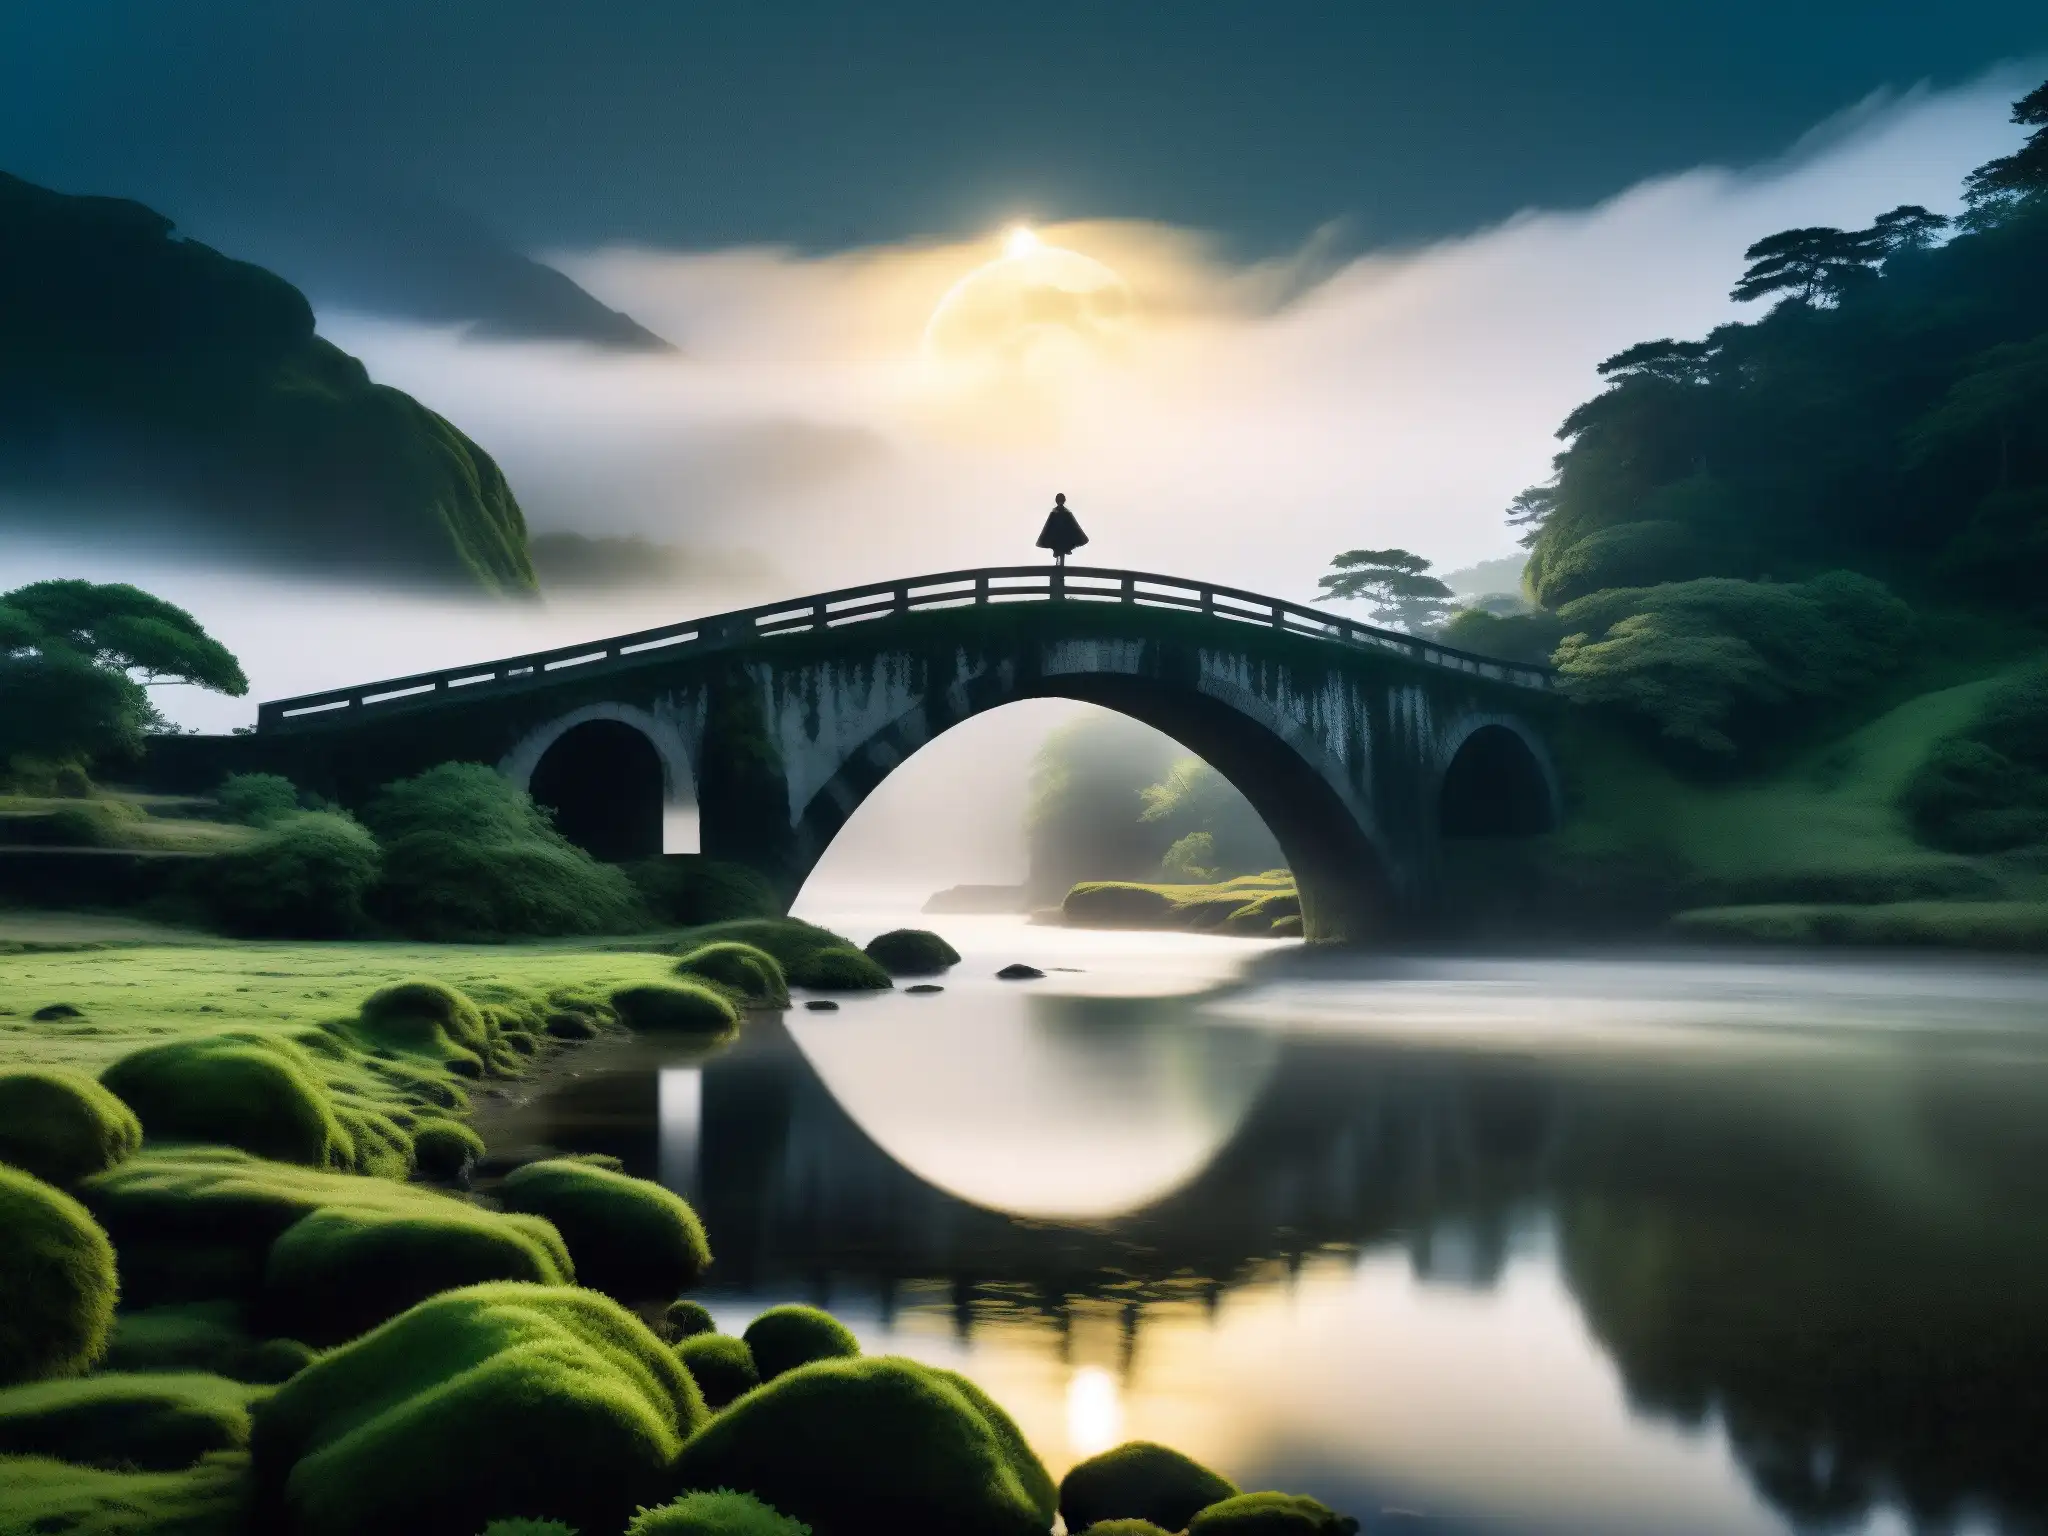 Encuentros paranormales en puente Inubashiri: figura solitaria en un puente antiguo, envuelto en niebla y misterio